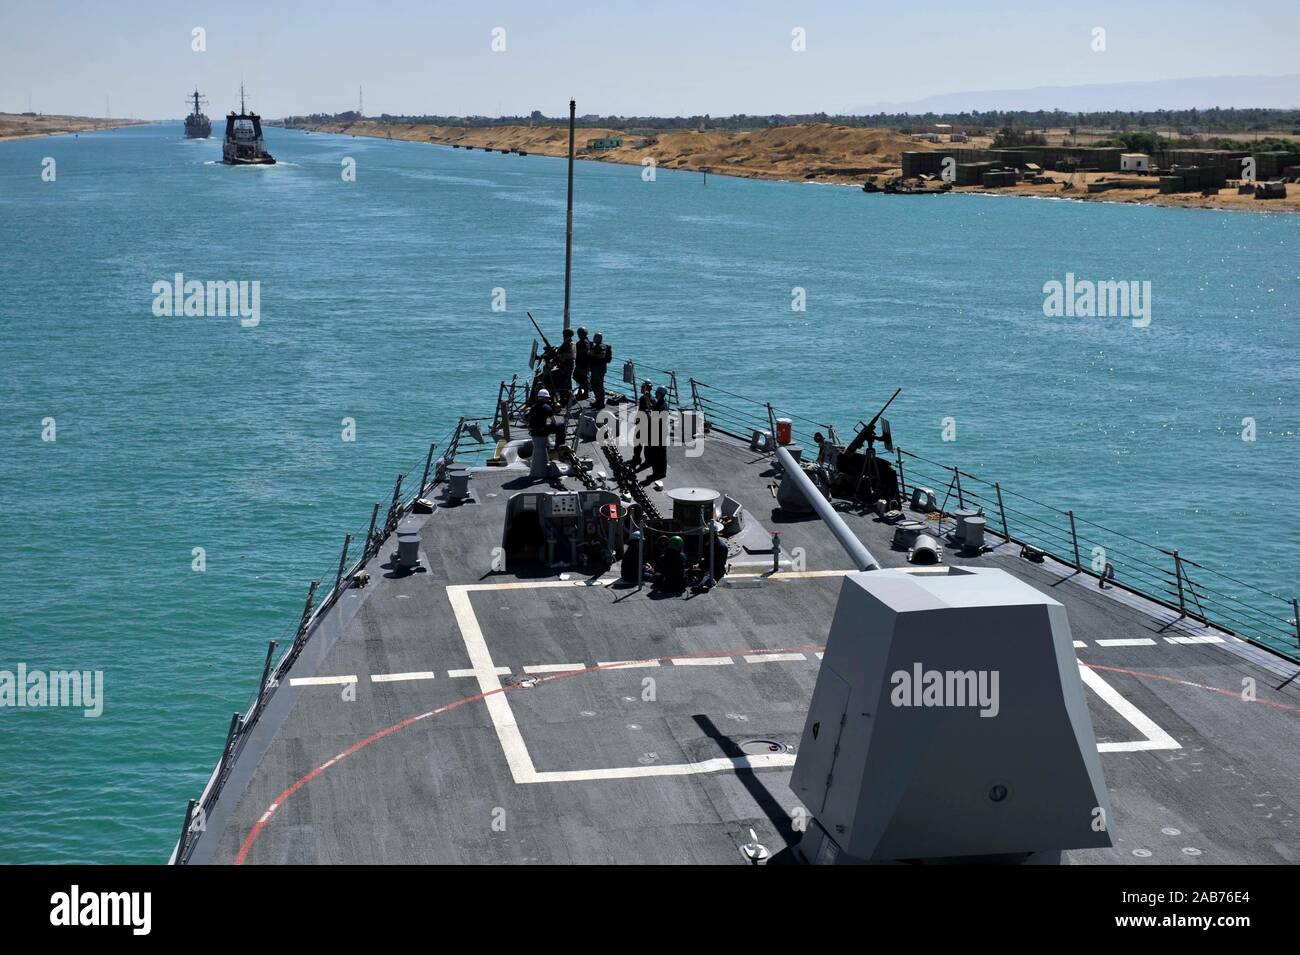 Canale di Suez (sett. 26, 2012) marinai guarda sul foc'sle visite-missile destroyer USS Jason Dunham (DDG 109) come la nave transita il Canale di Suez. Foto Stock